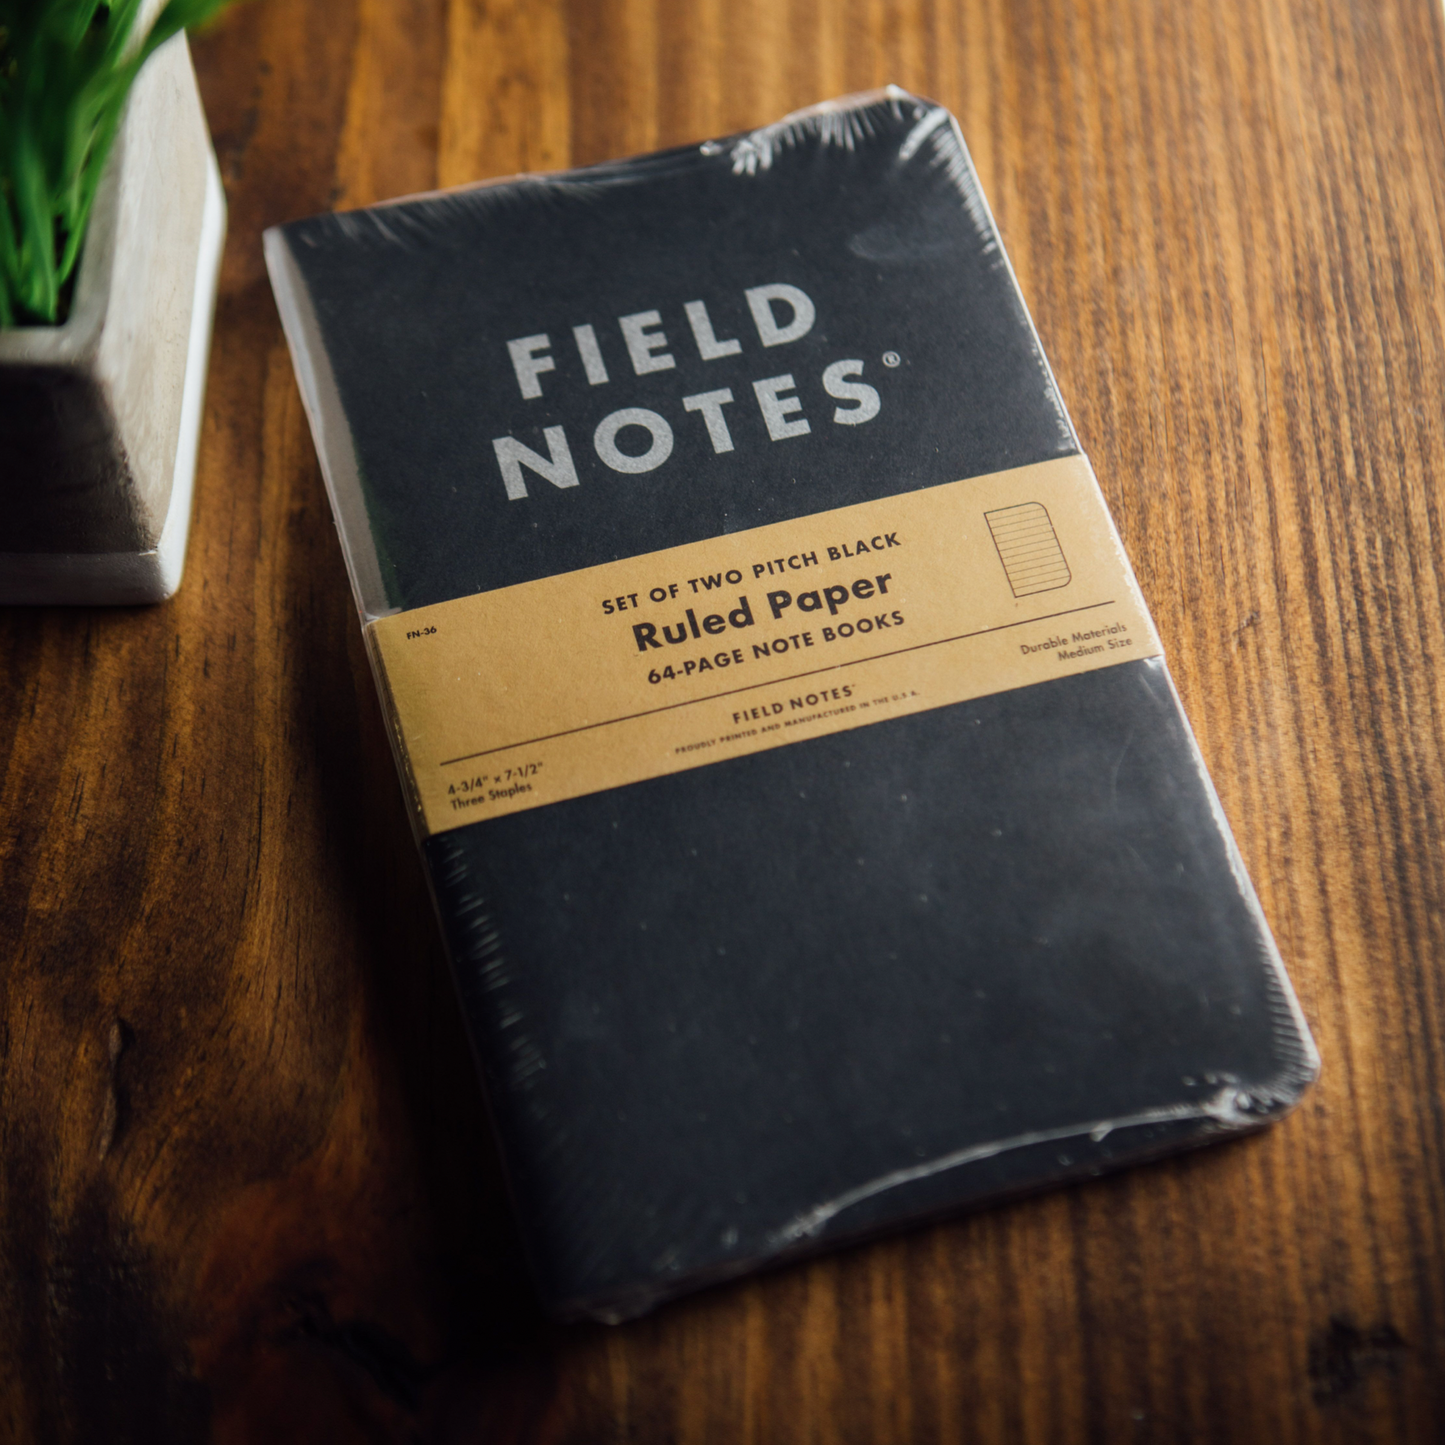 Pitch Black Notebooks